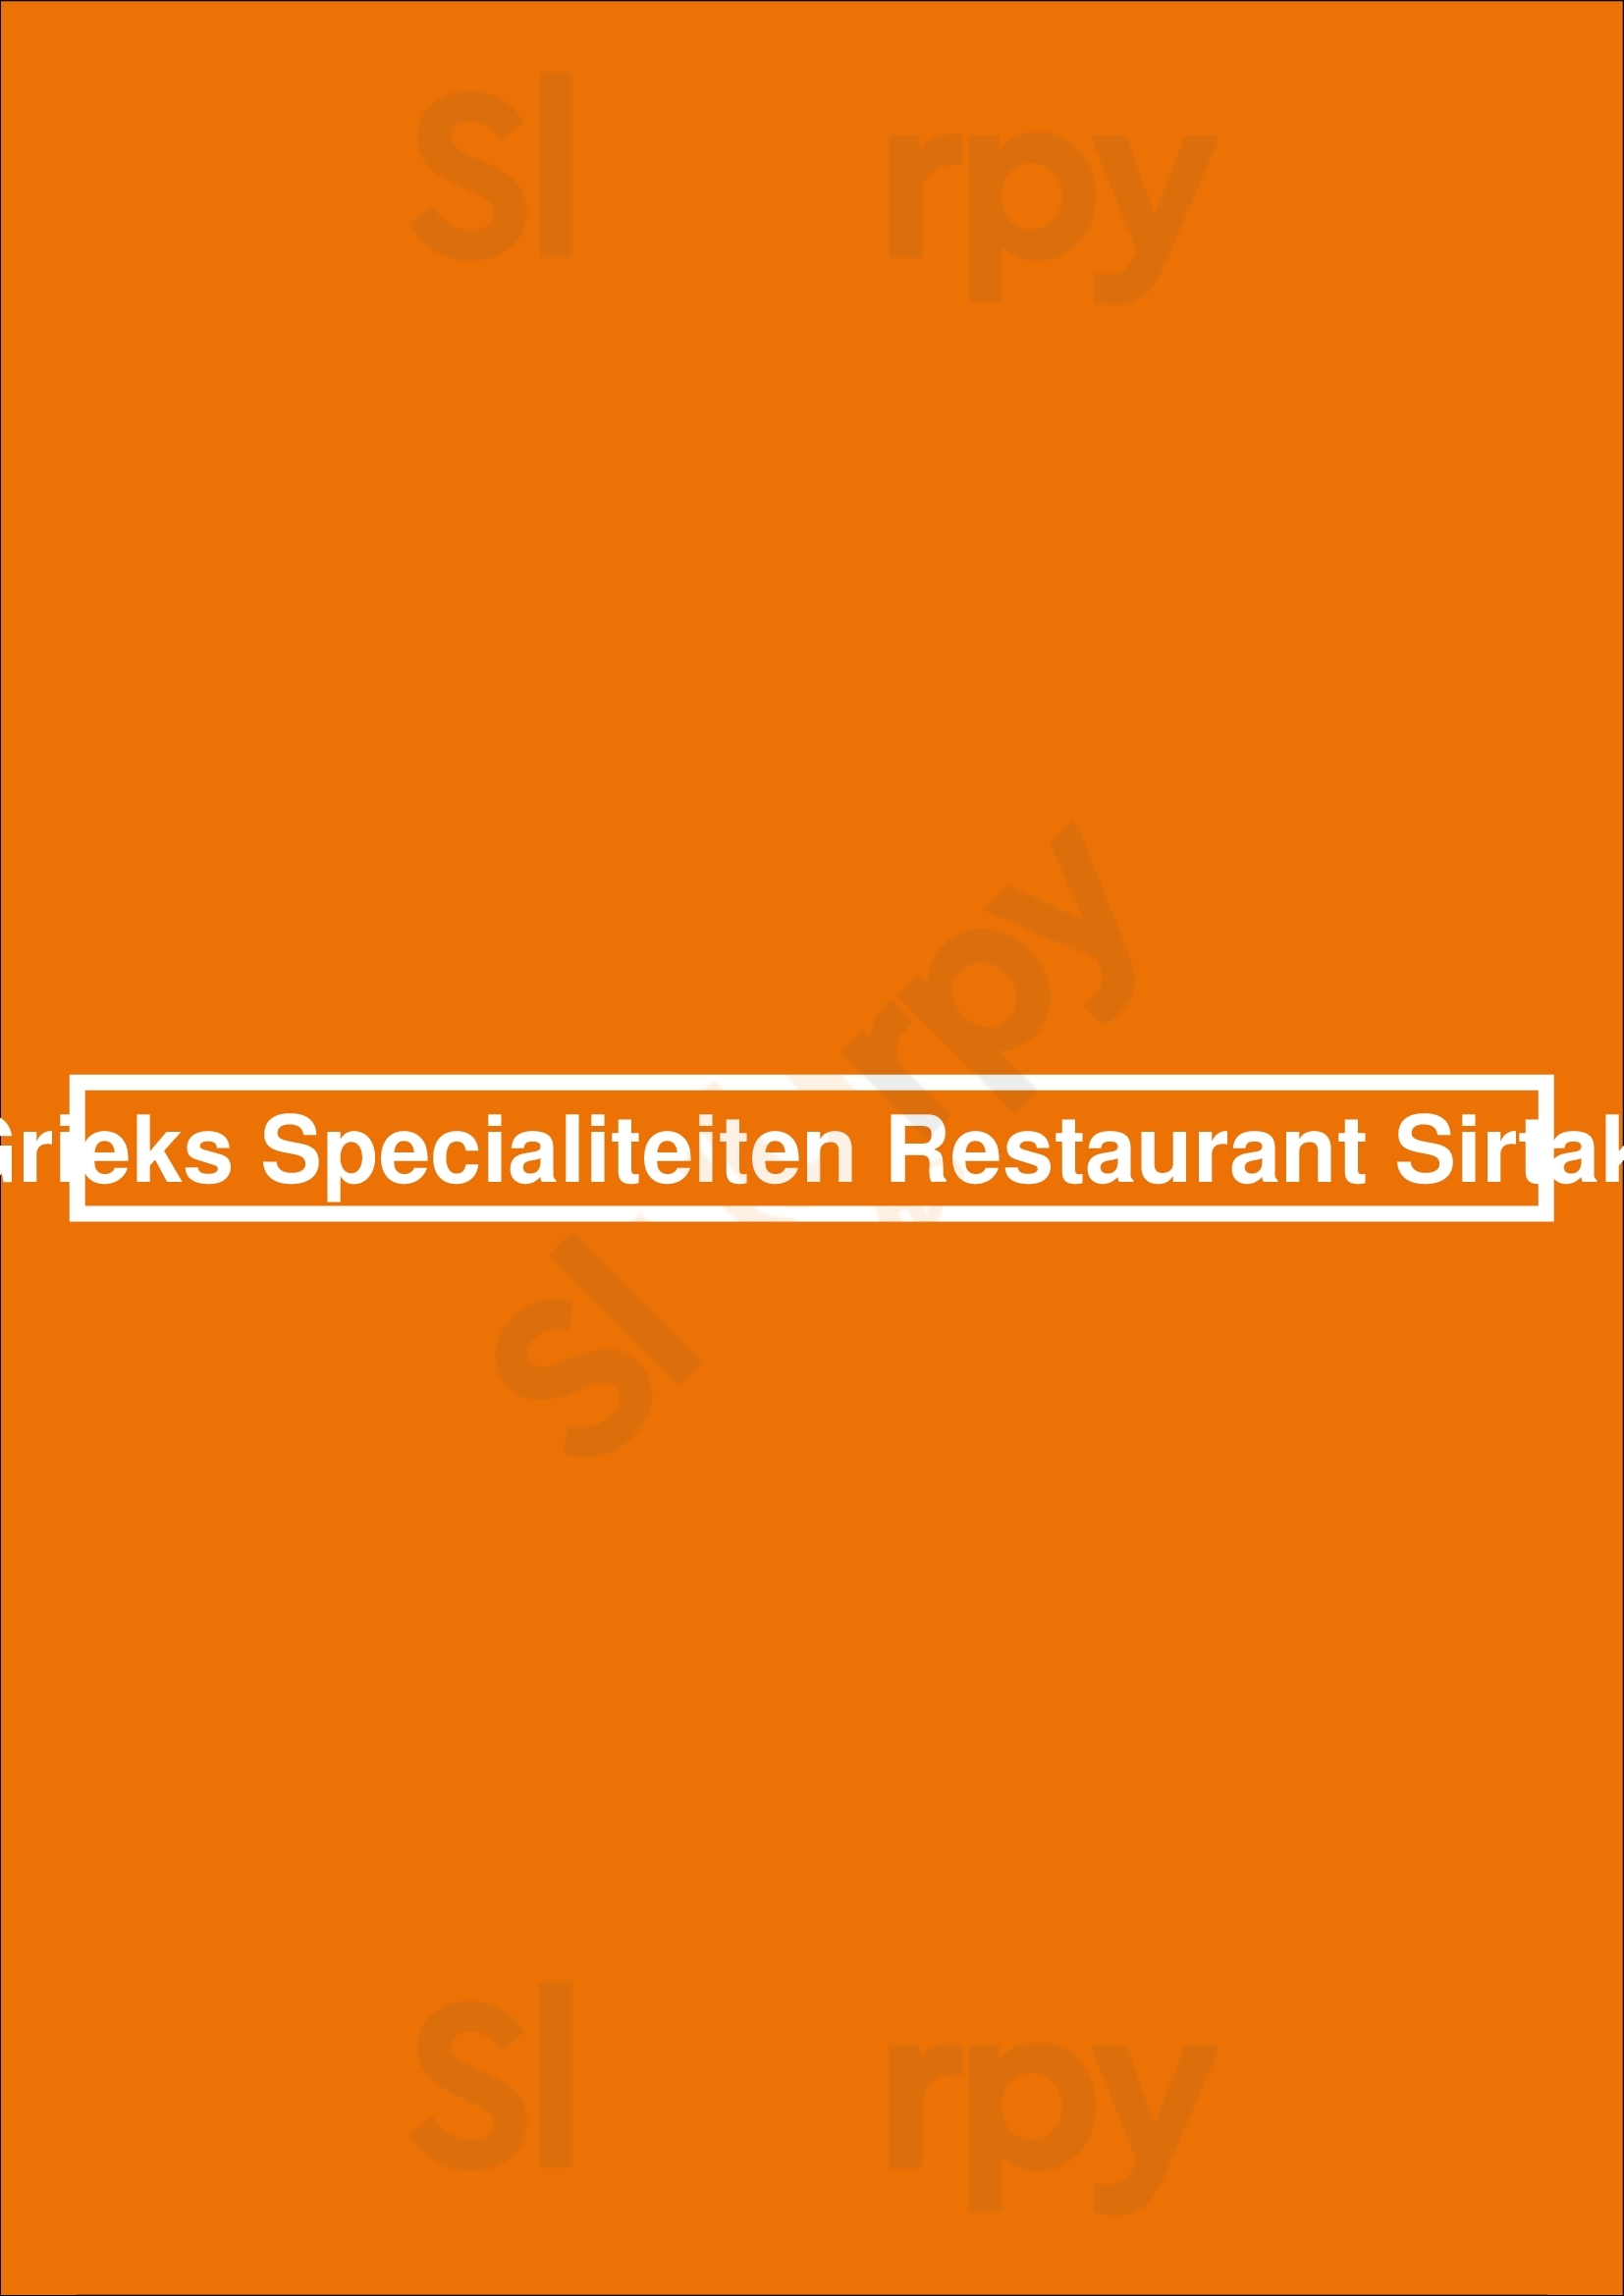 Grieks Specialiteiten Restaurant Sirtaki Zeist Menu - 1